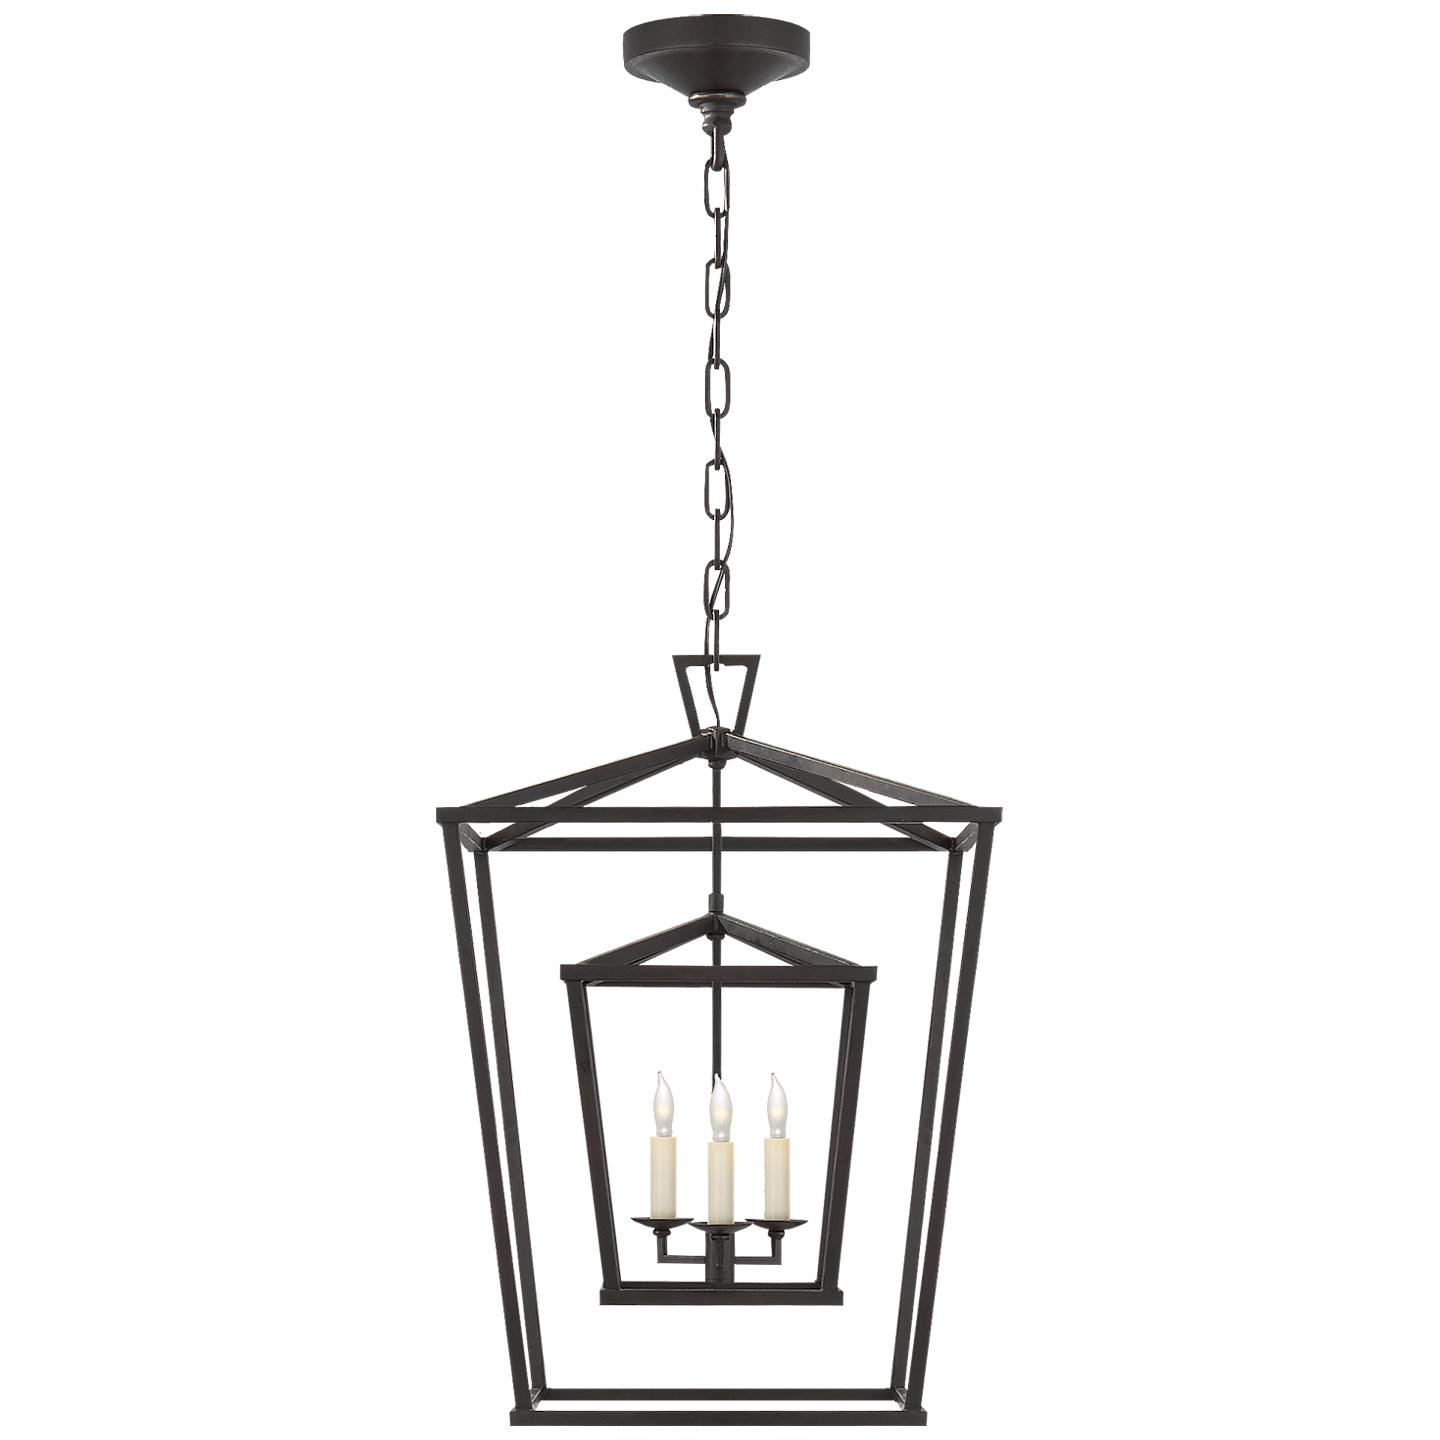 Купить Подвесной светильник Darlana Medium Double Cage Lantern в интернет-магазине roooms.ru